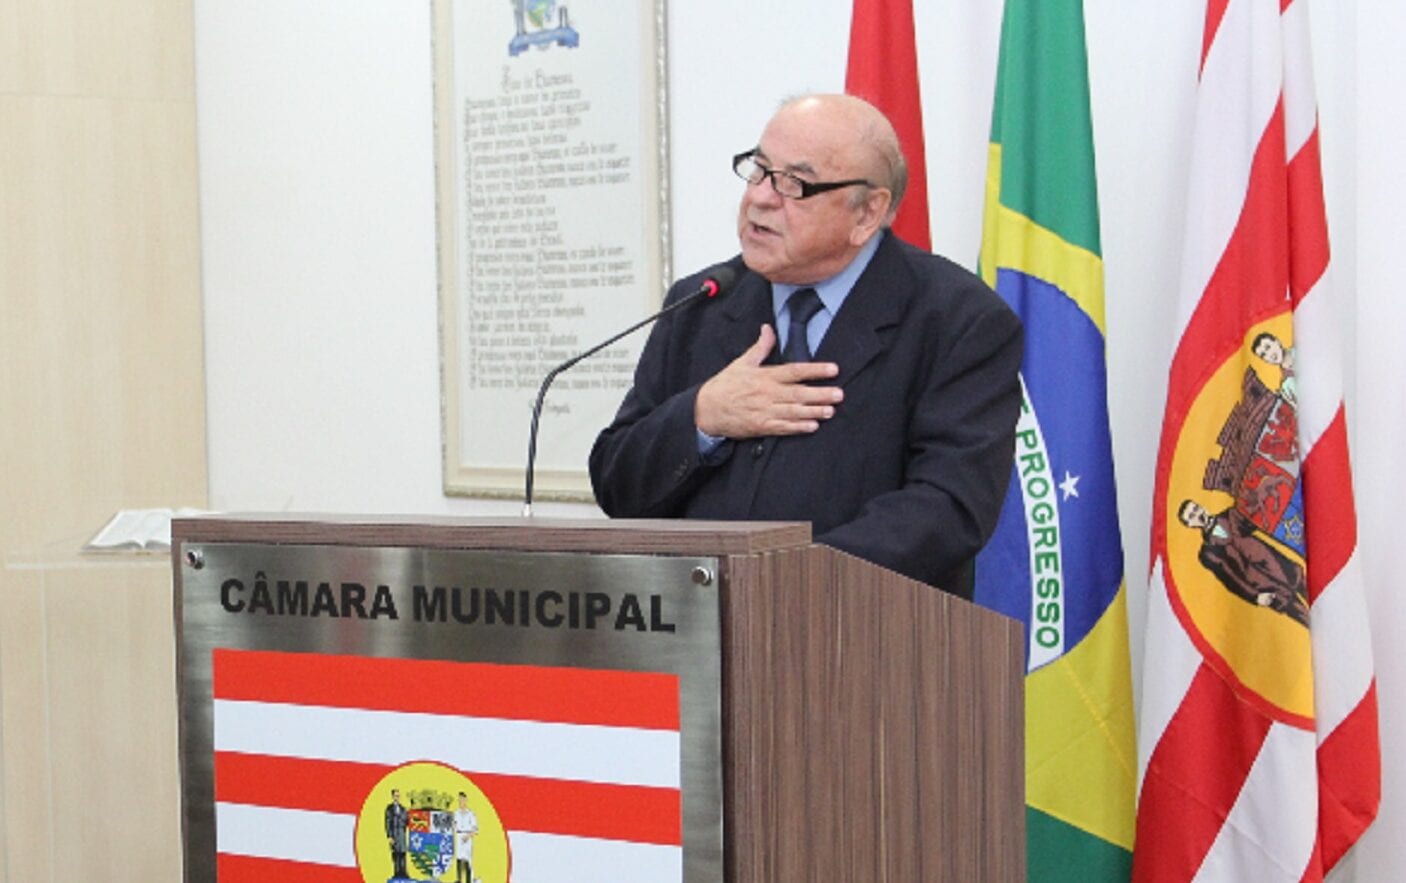 Doutor Joares Luiz Nogara recebendo homenagem na Câmara - foto de Vivian Persuhn